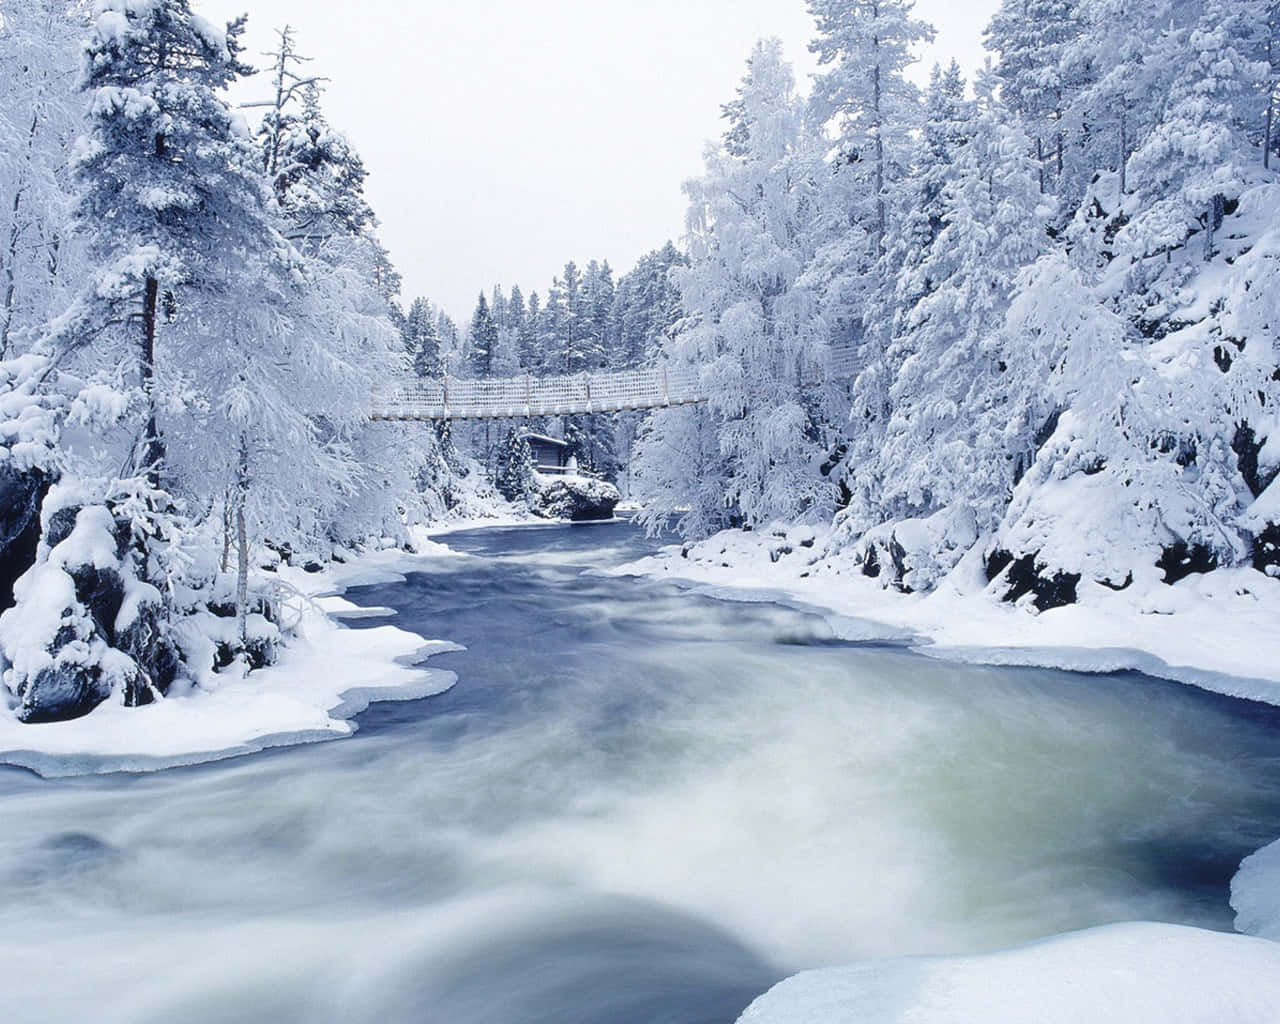 Catturala Bellezza Dell'inverno Con Questo Incredibile Paesaggio Innevato.